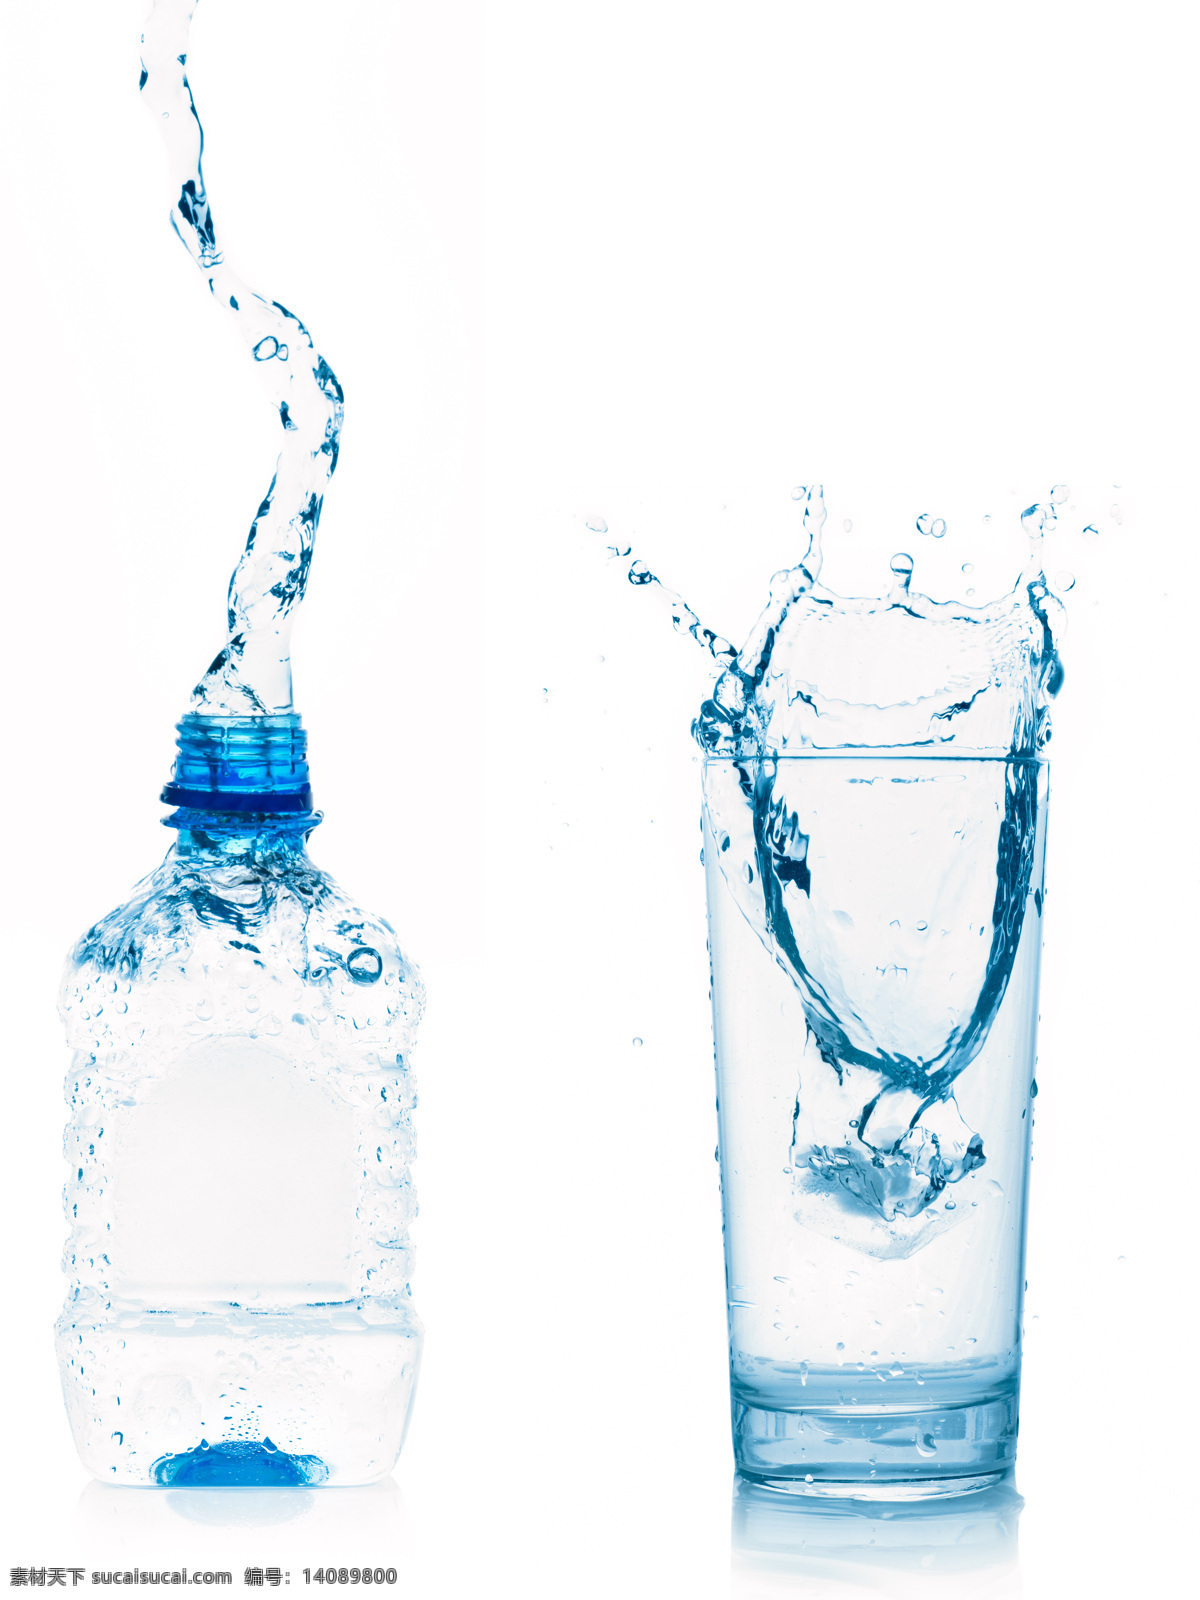 矿泉水 玻璃 水杯 动感水花 水滴 飞溅的水花 水纹 清水 水瓶 玻璃杯子 水图片 生活百科